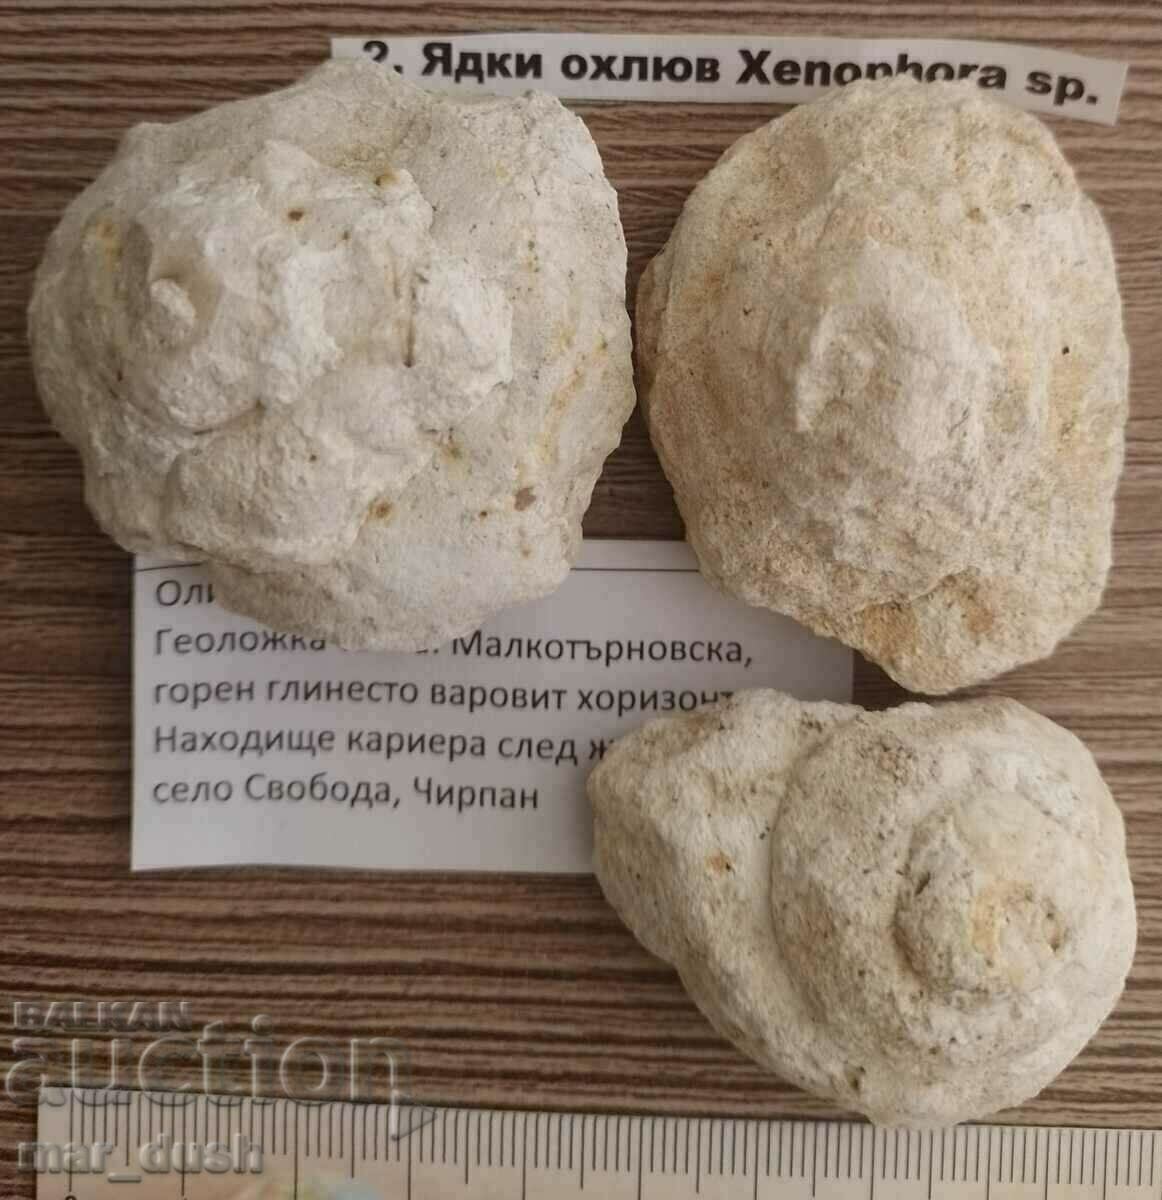 Melci fosile din Bulgaria